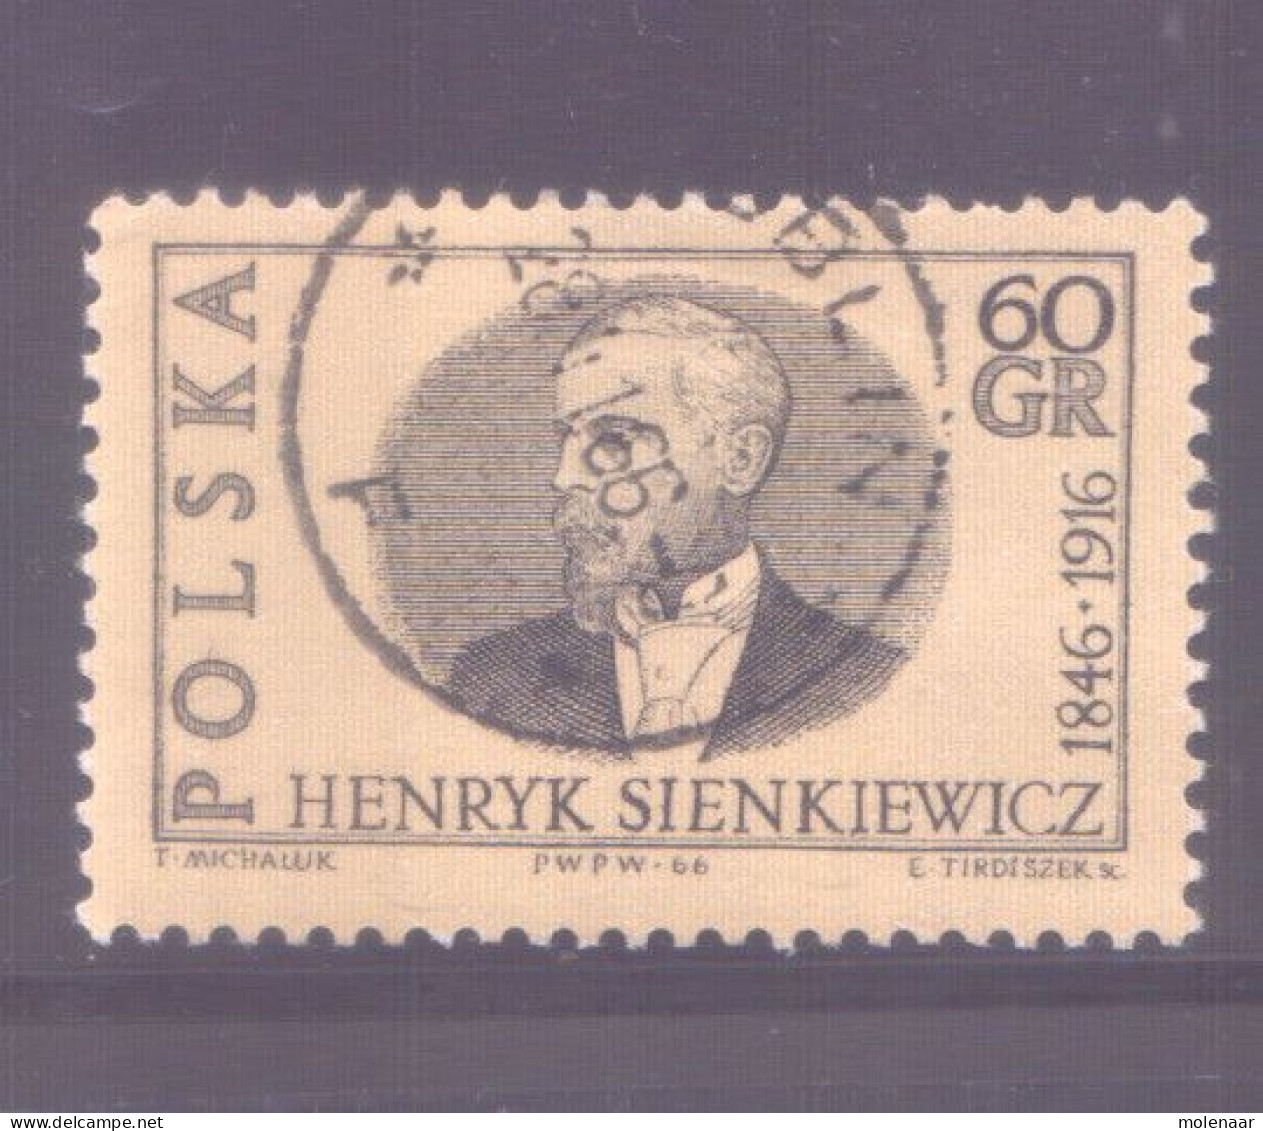 Postzegels > Europa > Polen > 1944-.... Republiek > 1971-80 > Gebruikt No. 1657 (11984) - Oblitérés